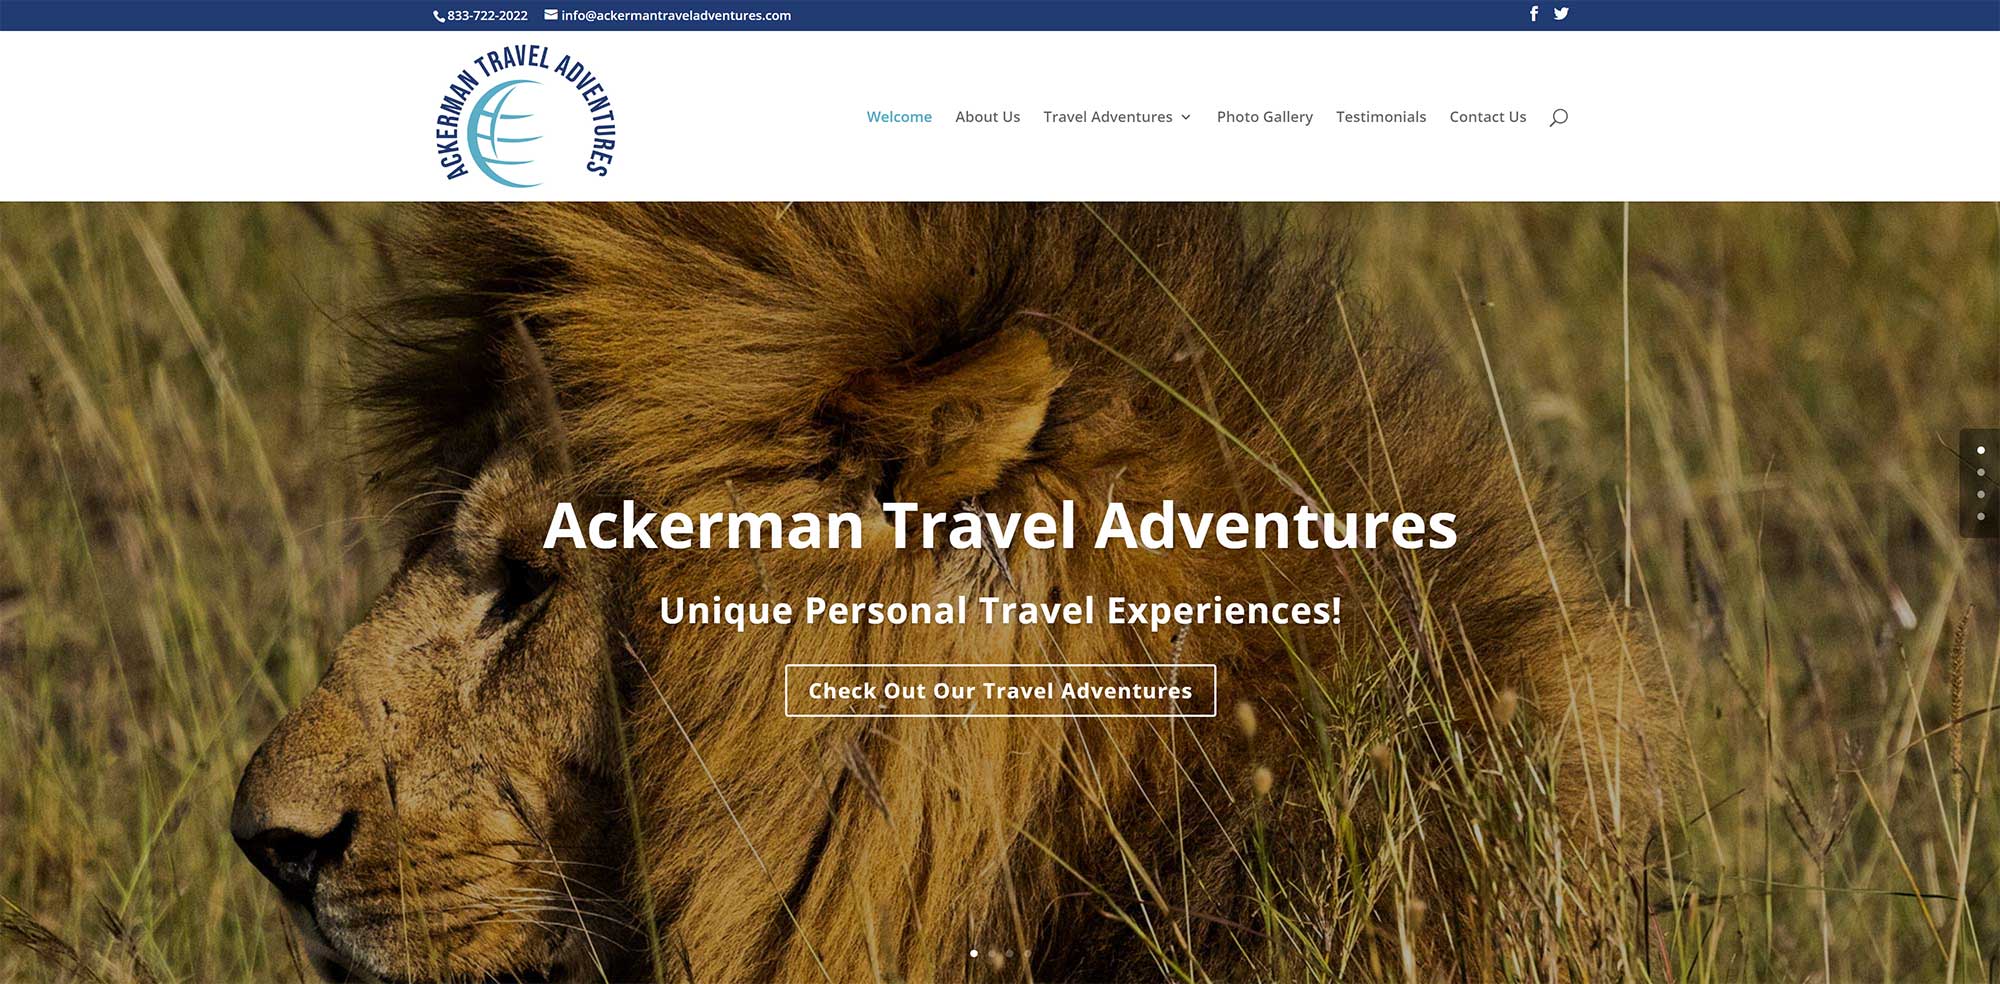 Ackerman Travel Adventures